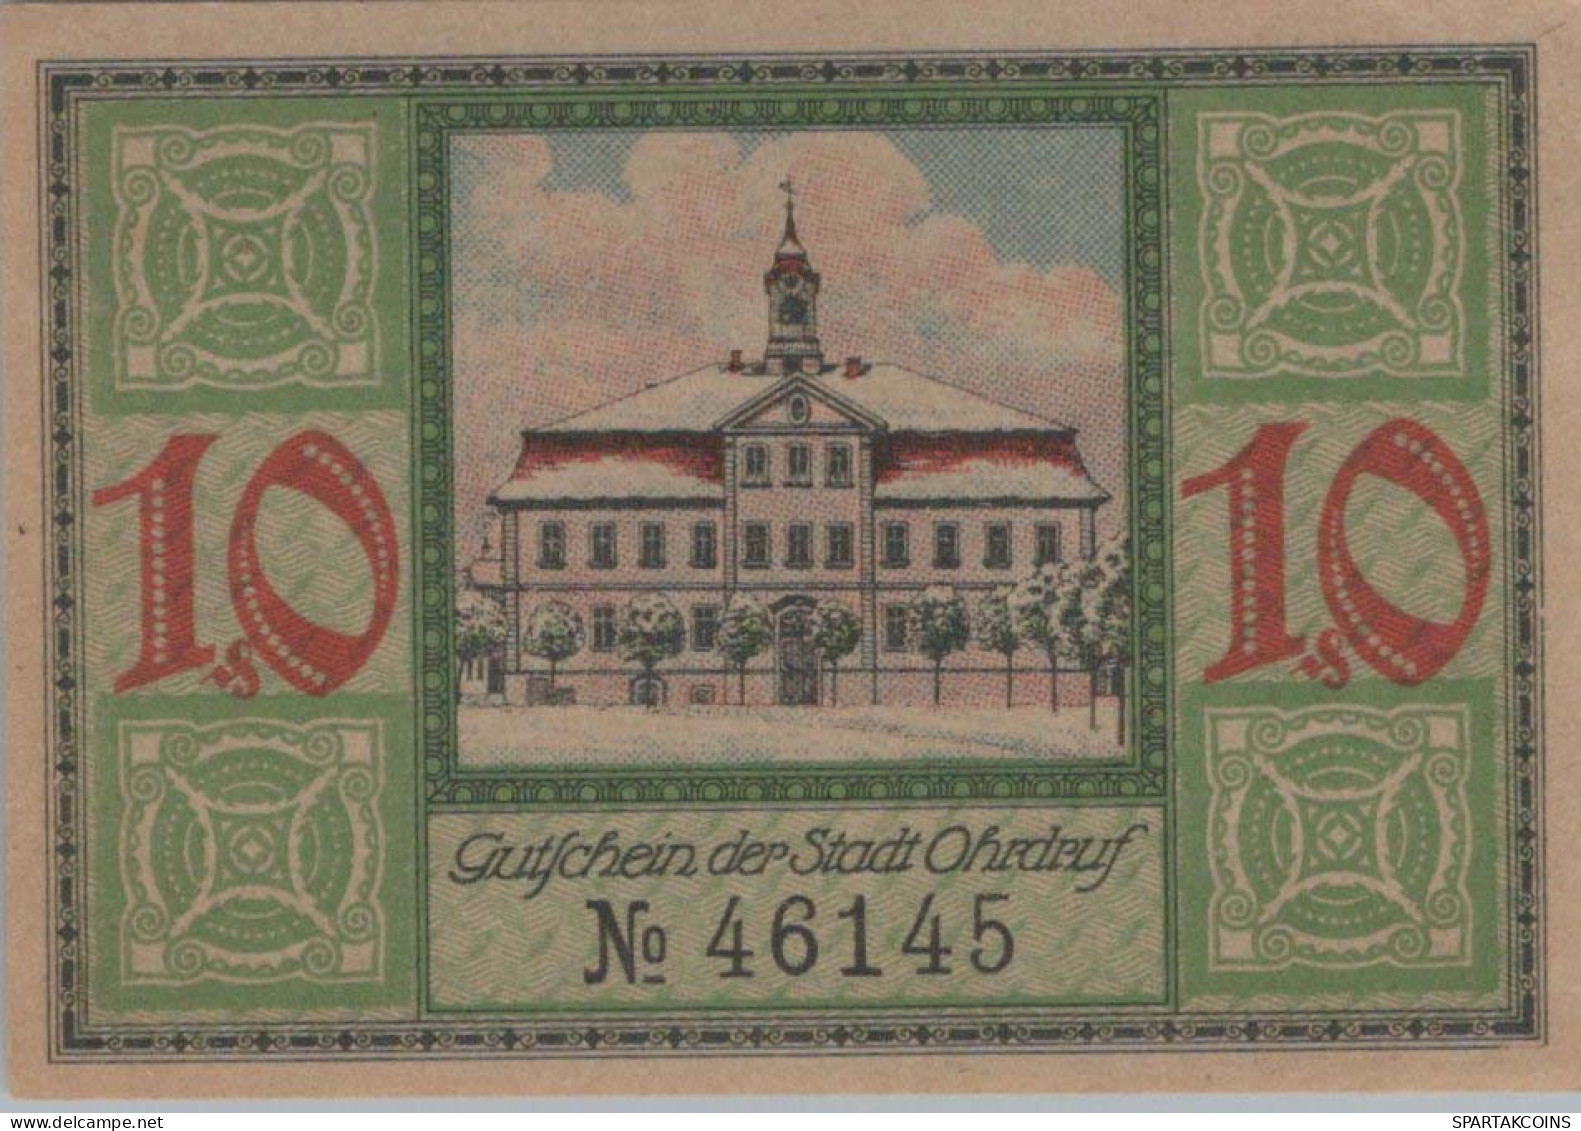 10 PFENNIG 1921 Stadt OHRDRUF Saxe-Coburg And Gotha UNC DEUTSCHLAND #PJ074 - [11] Local Banknote Issues